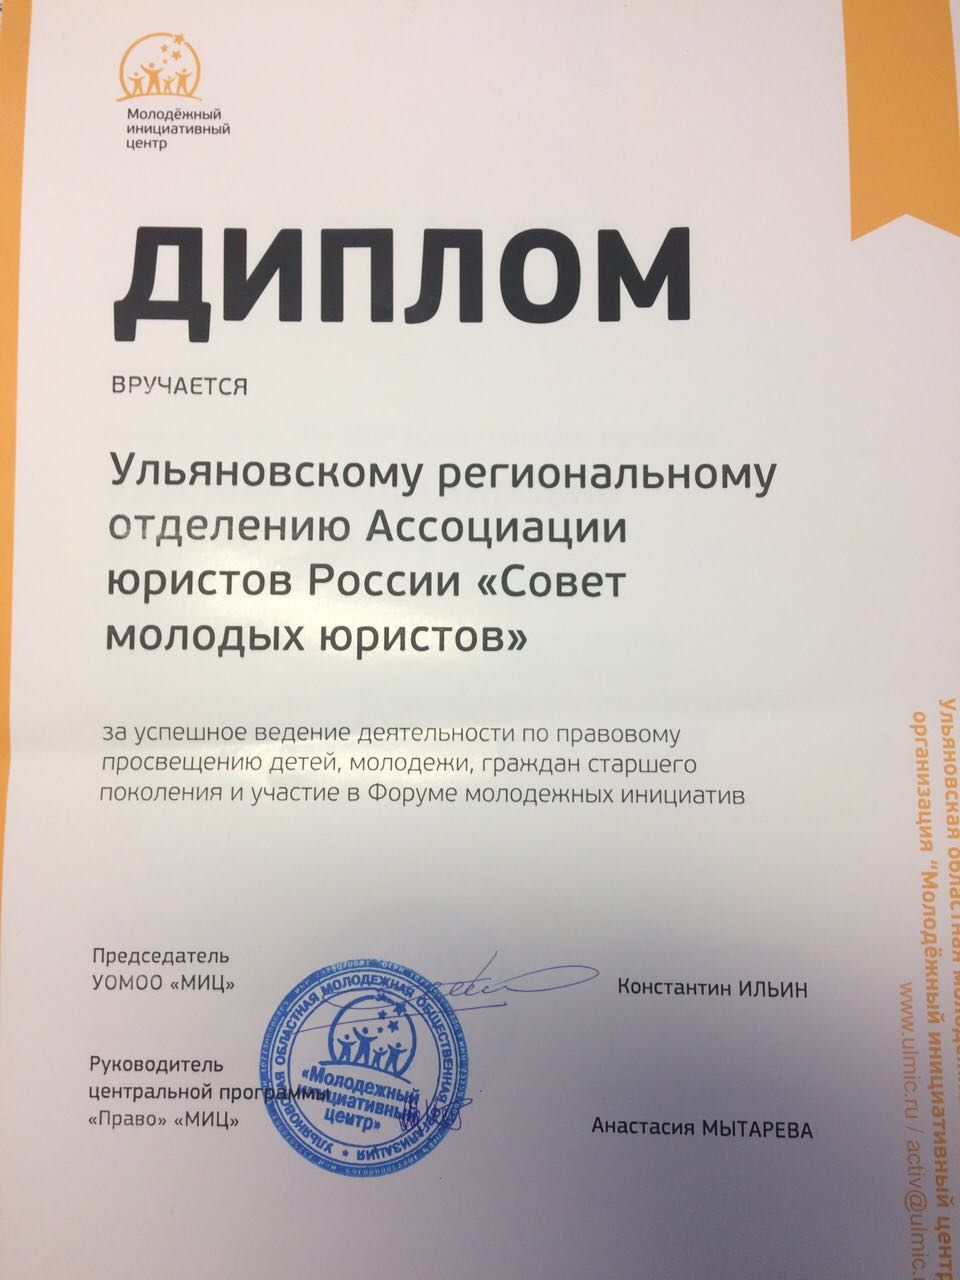 Ульяновское региональное отделение отмечено дипломом Молодёжного инициативного центра за успешное ведение деятельности по правовому просвещению